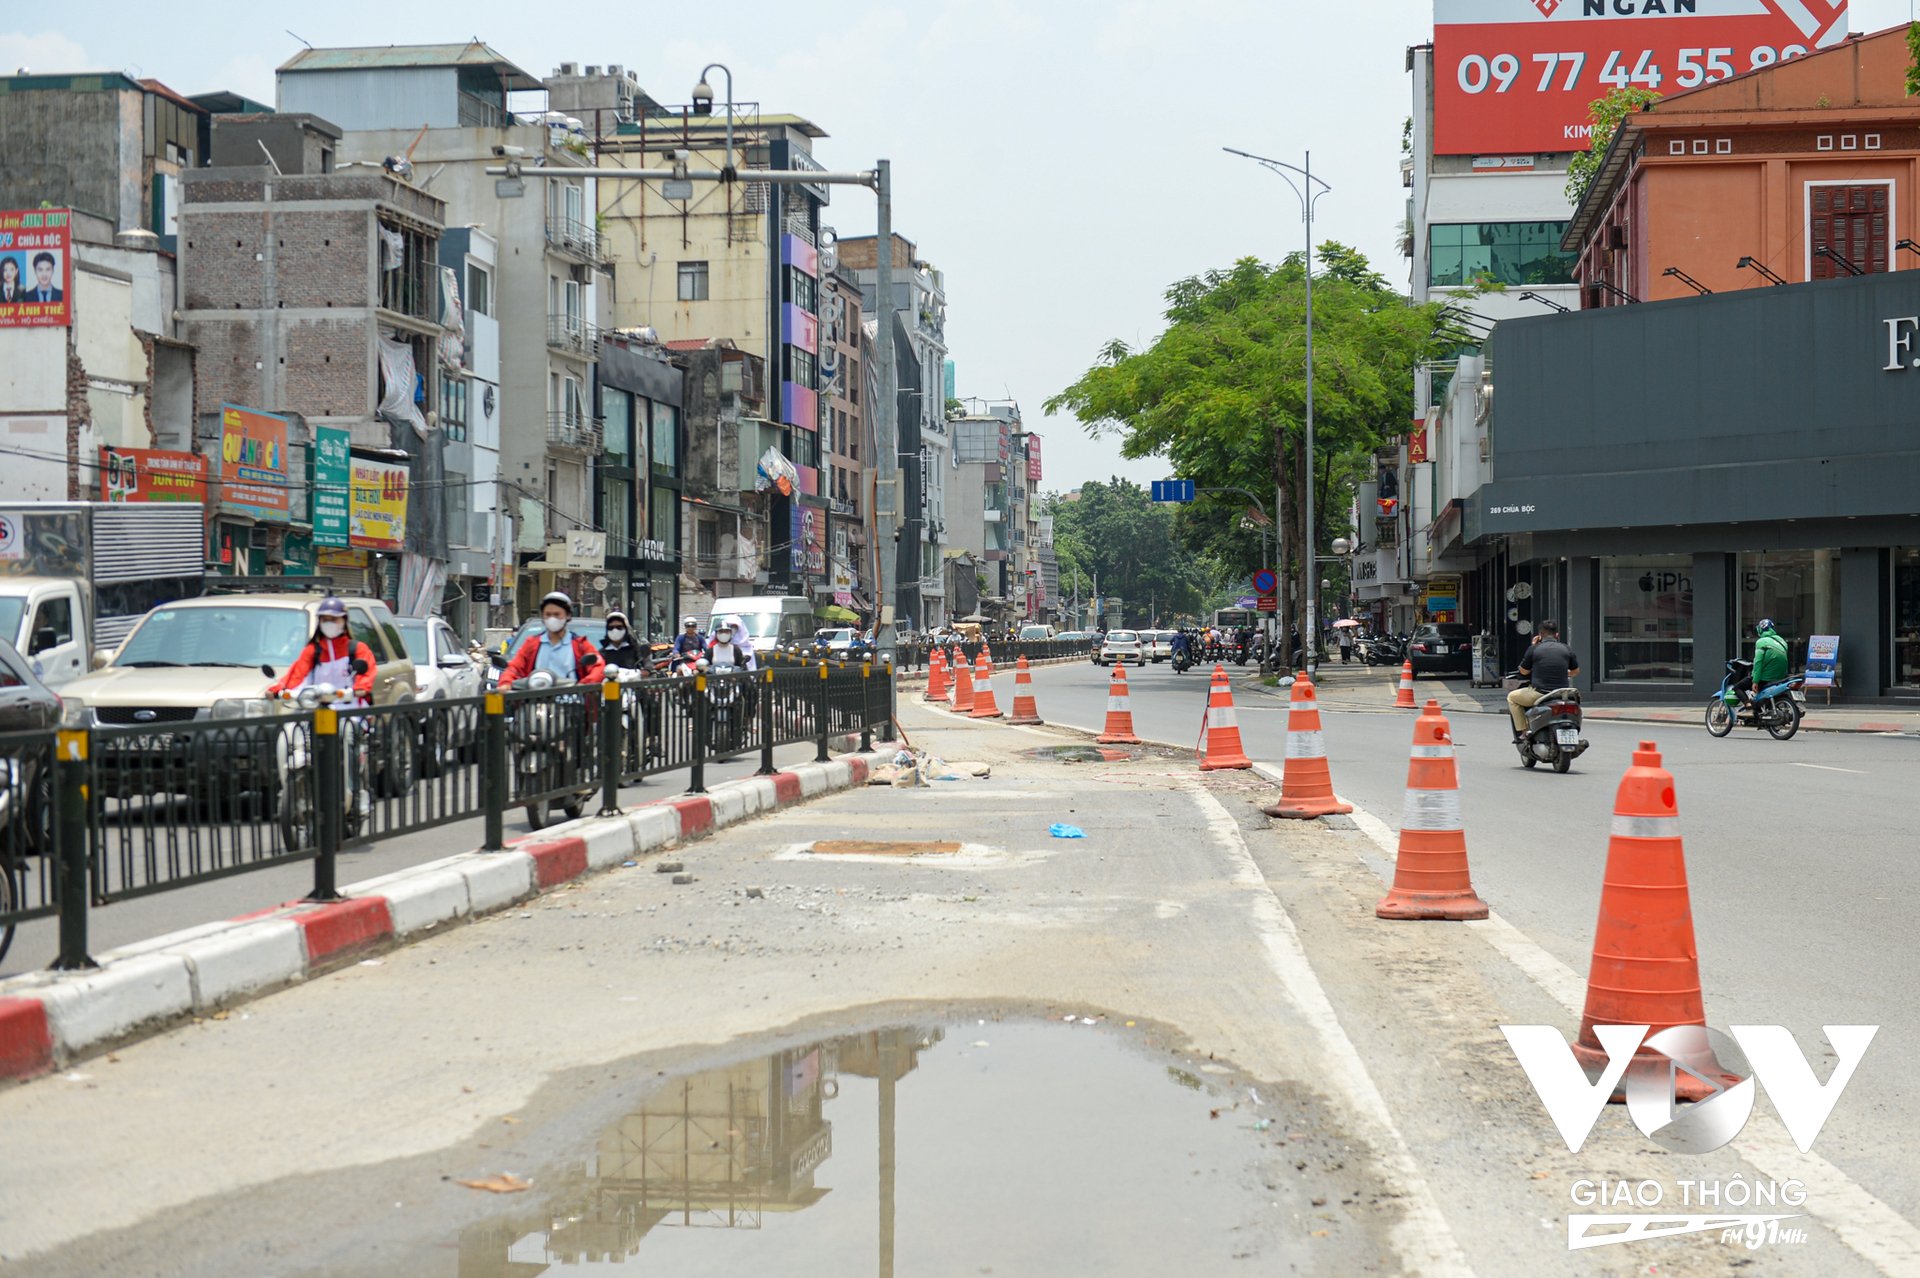 Phía đầu nút giao thông Chùa Bộc - Thái Hà dải phân cách giữa đã hoàn thiện việc dịch chuyển để phù hợp với thiết kế tuyến đường.